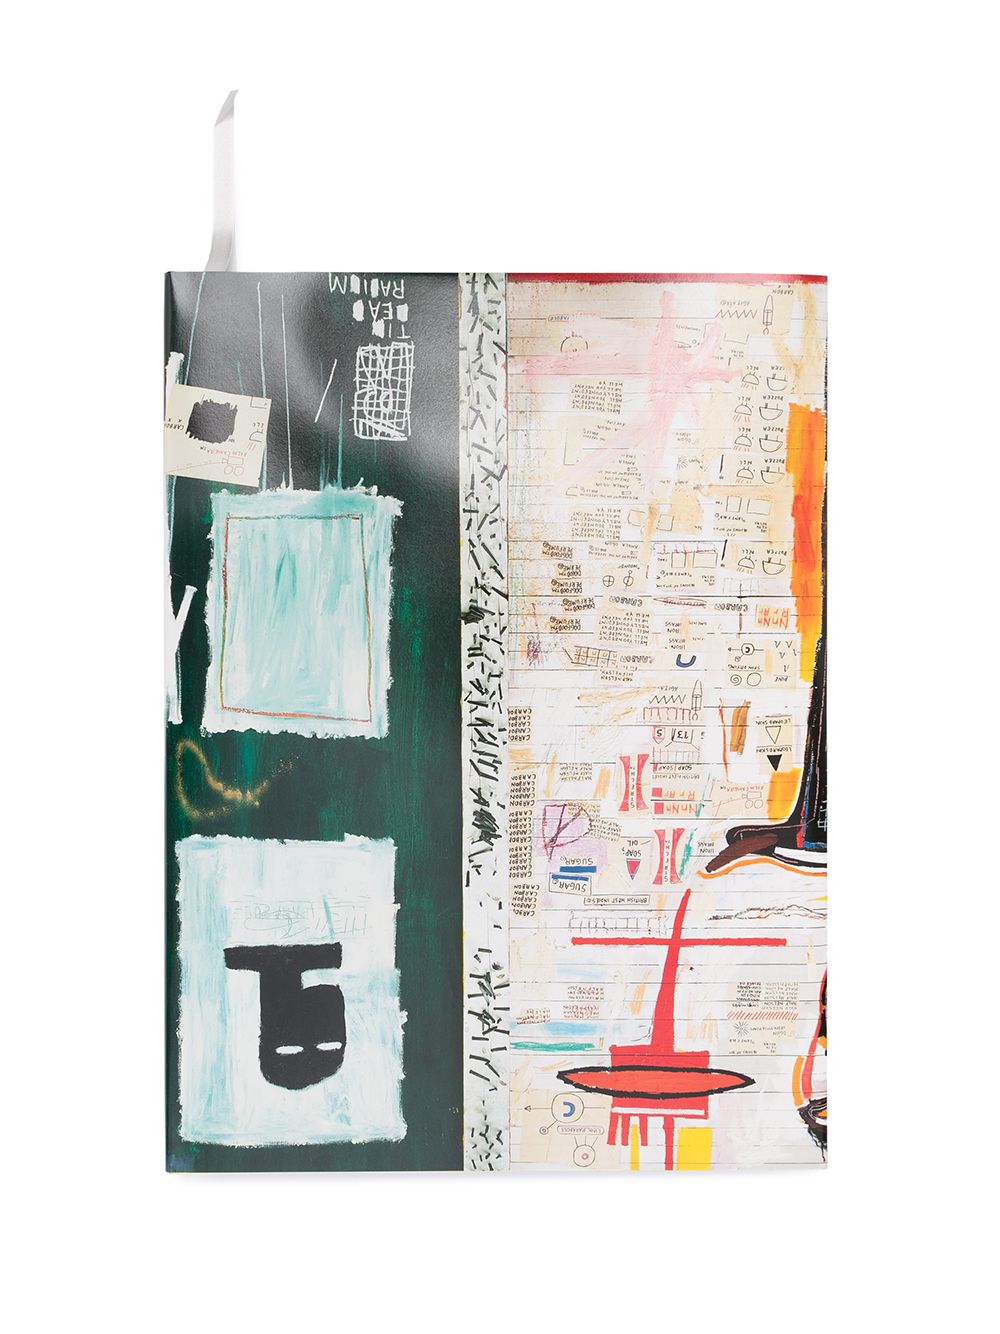 Taschen Books Jean-Michel Basquiat boek - Wit